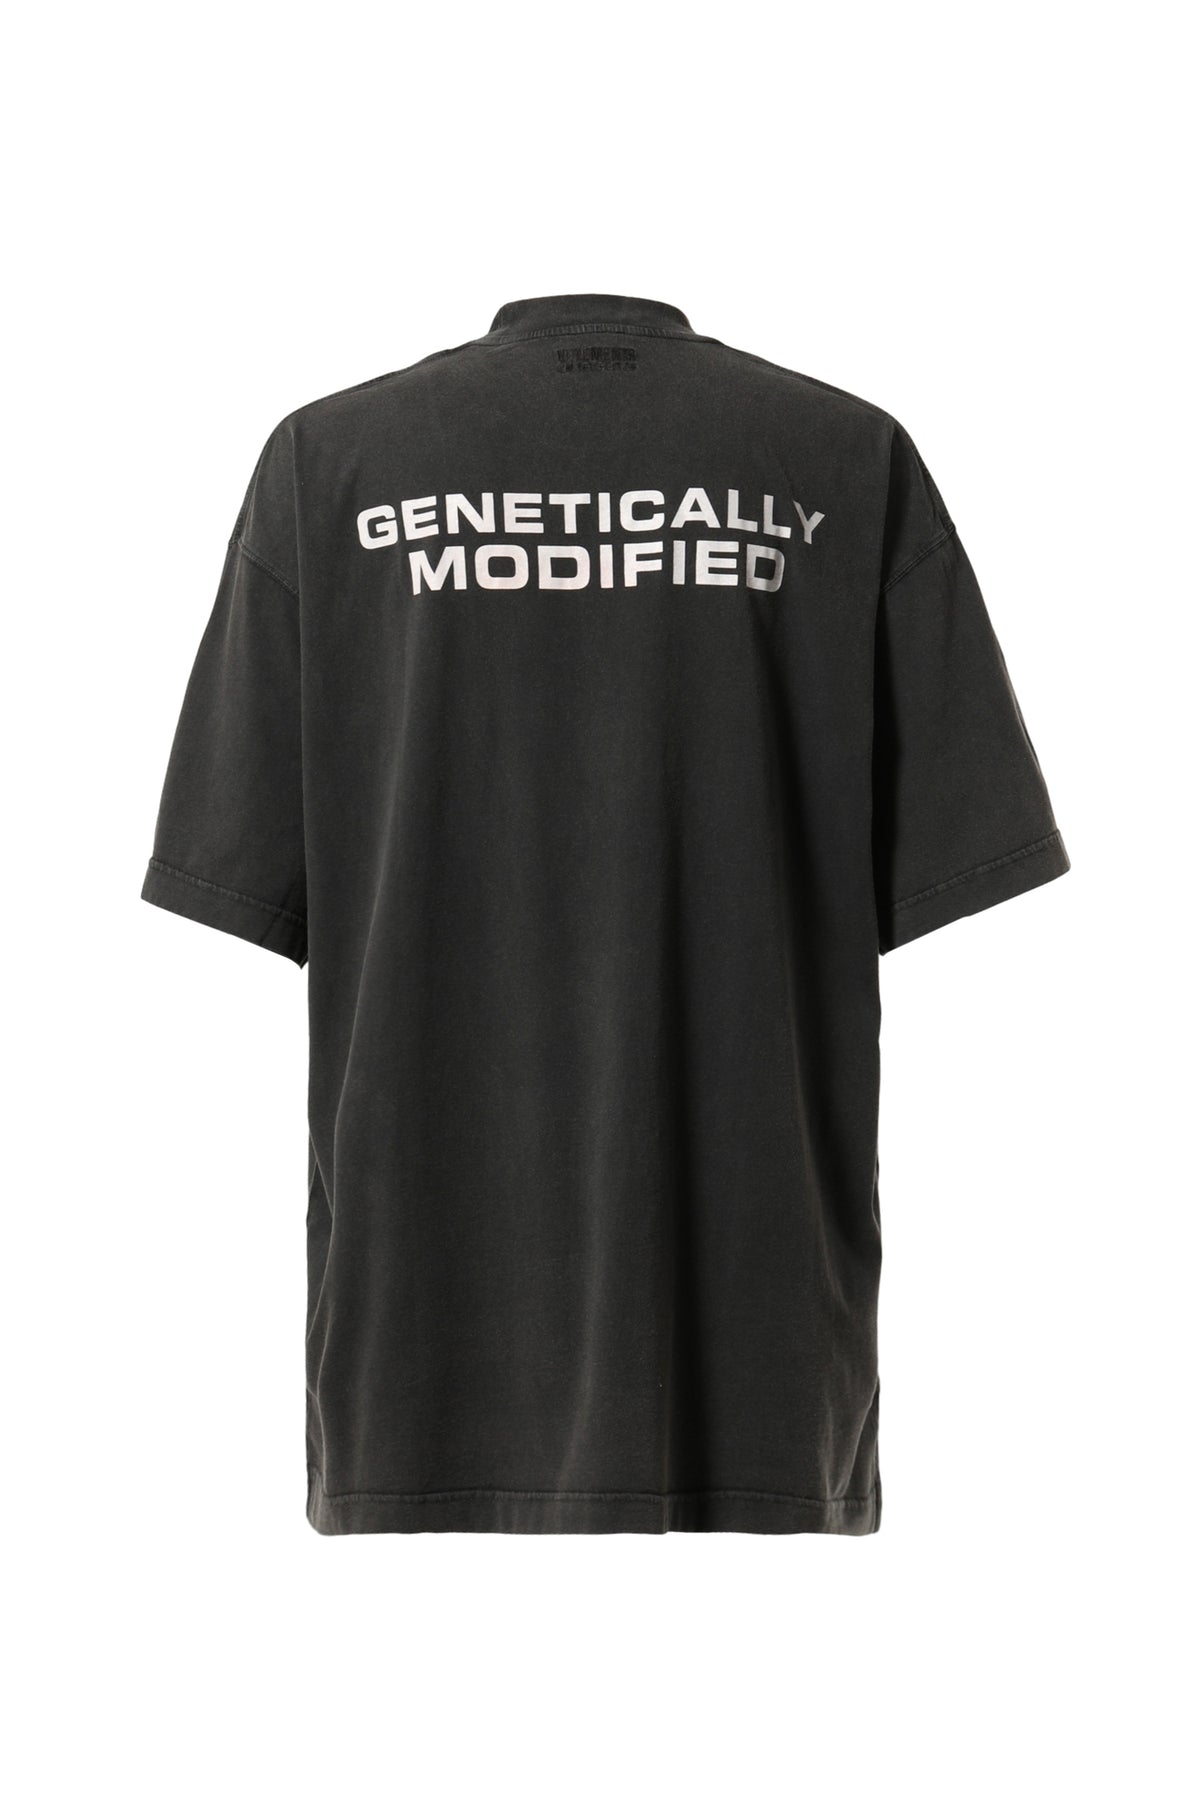 vetements genetically Tシャツ